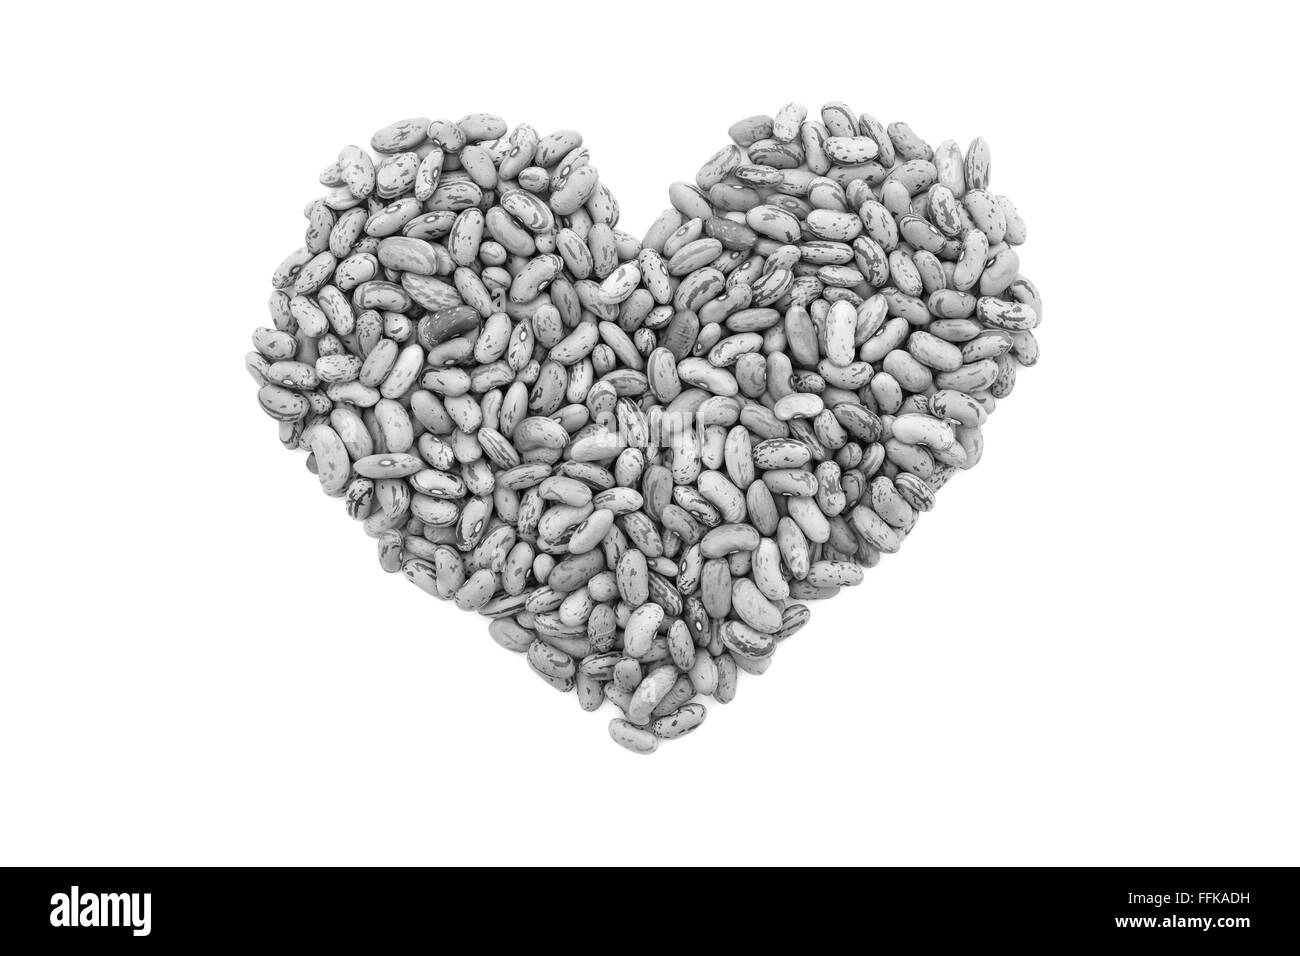 Cranberry Bohnen oder Borlotti Bohnen in Form eines Herzens, isoliert auf einem weißen Hintergrund - monochrome Verarbeitung Stockfoto